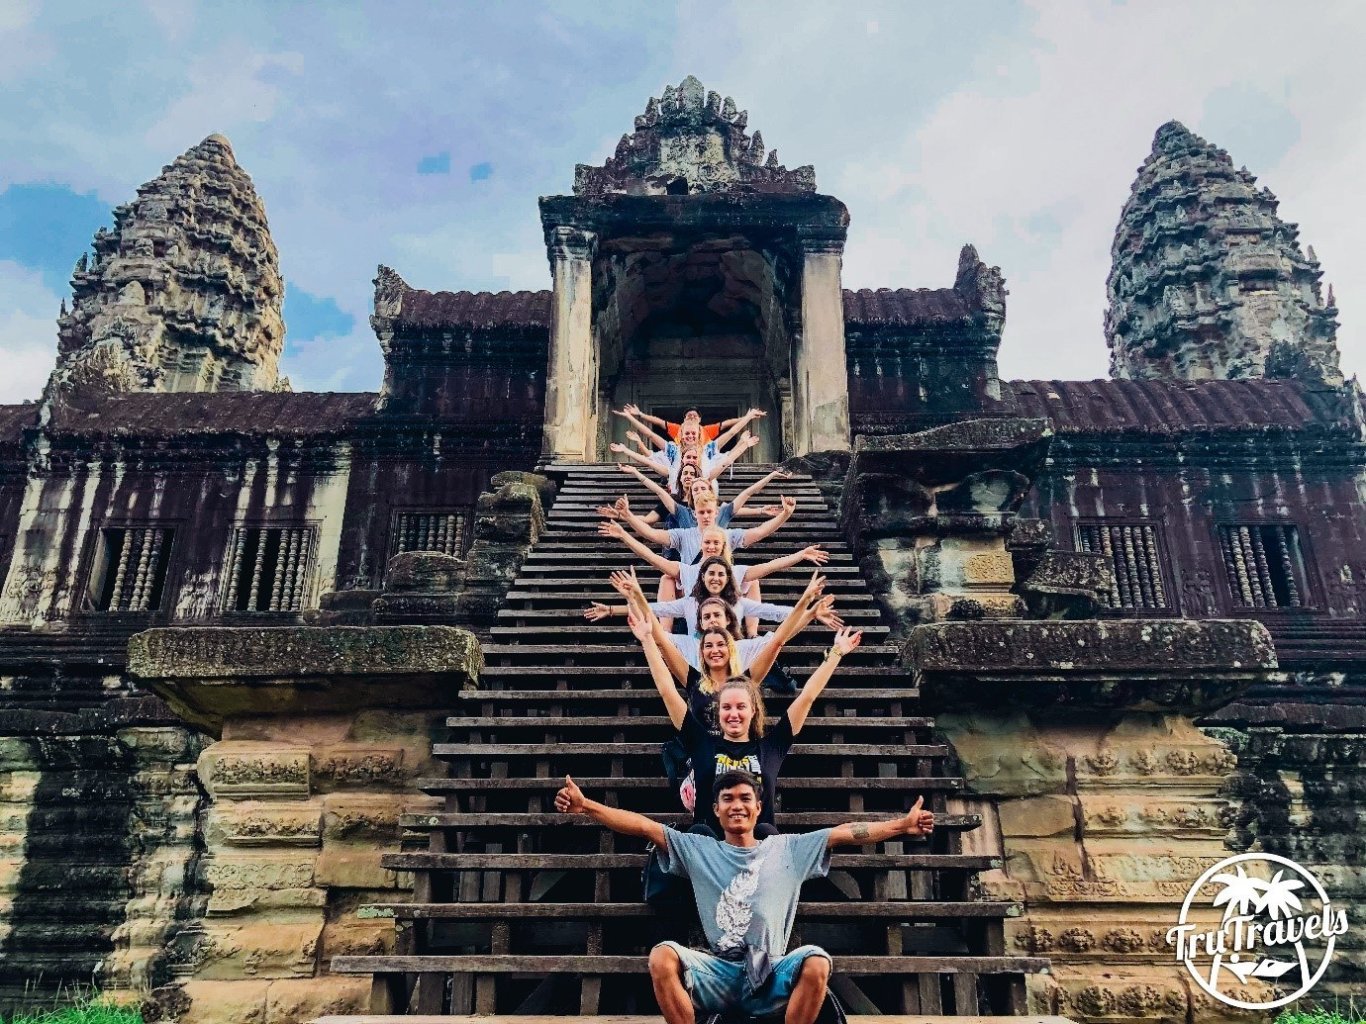 Angkor wat temple, Cambodia